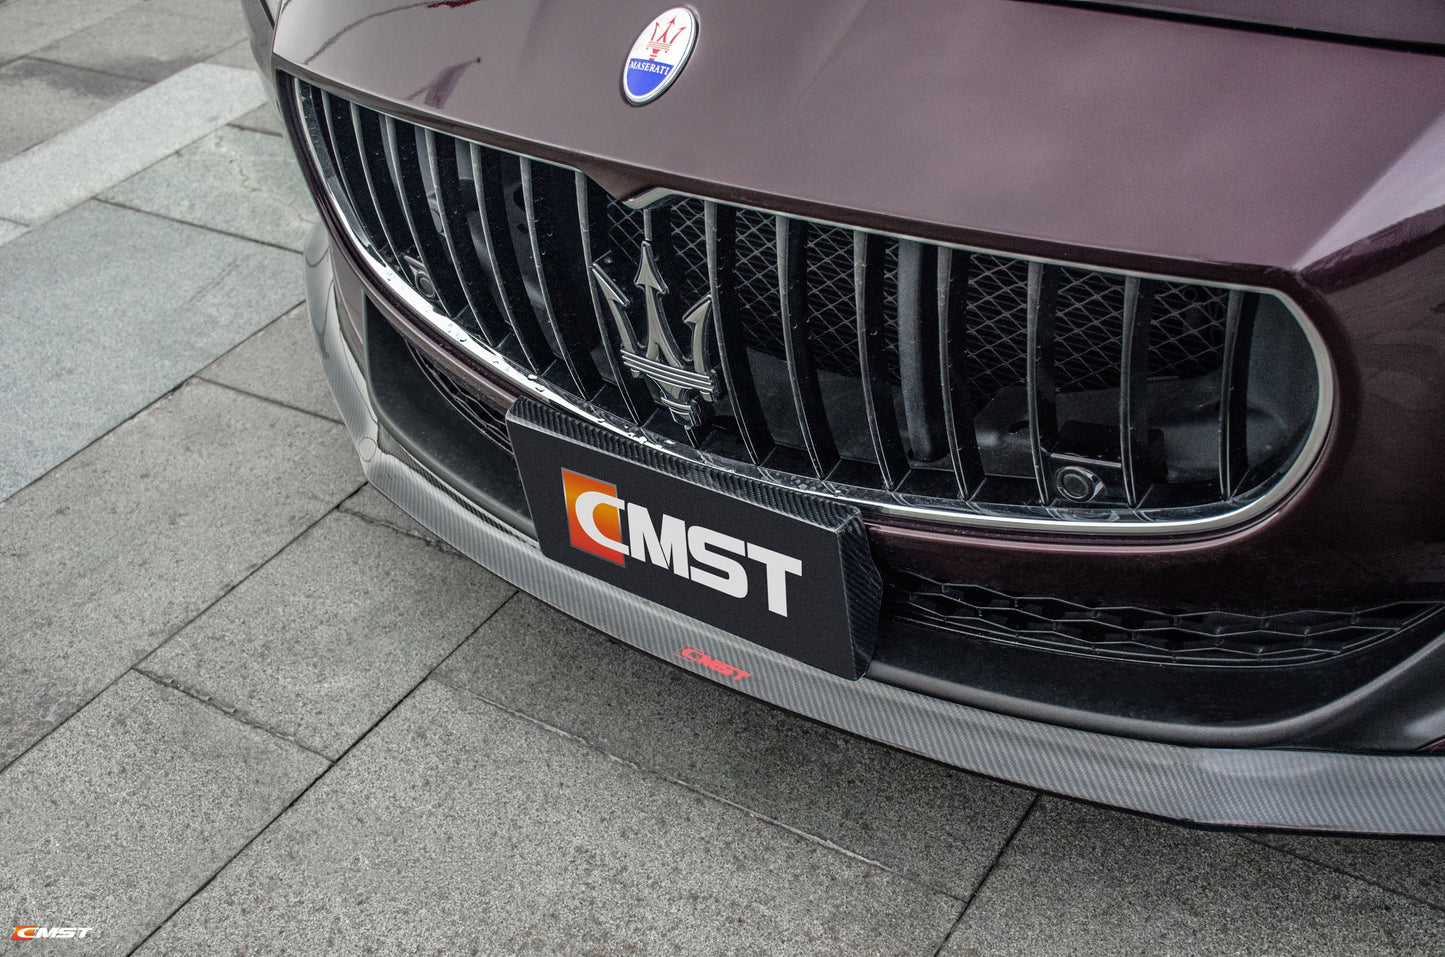 CMST Carbon Fiber Full Body Kit for Maserati Quattro Porte 2013-2016